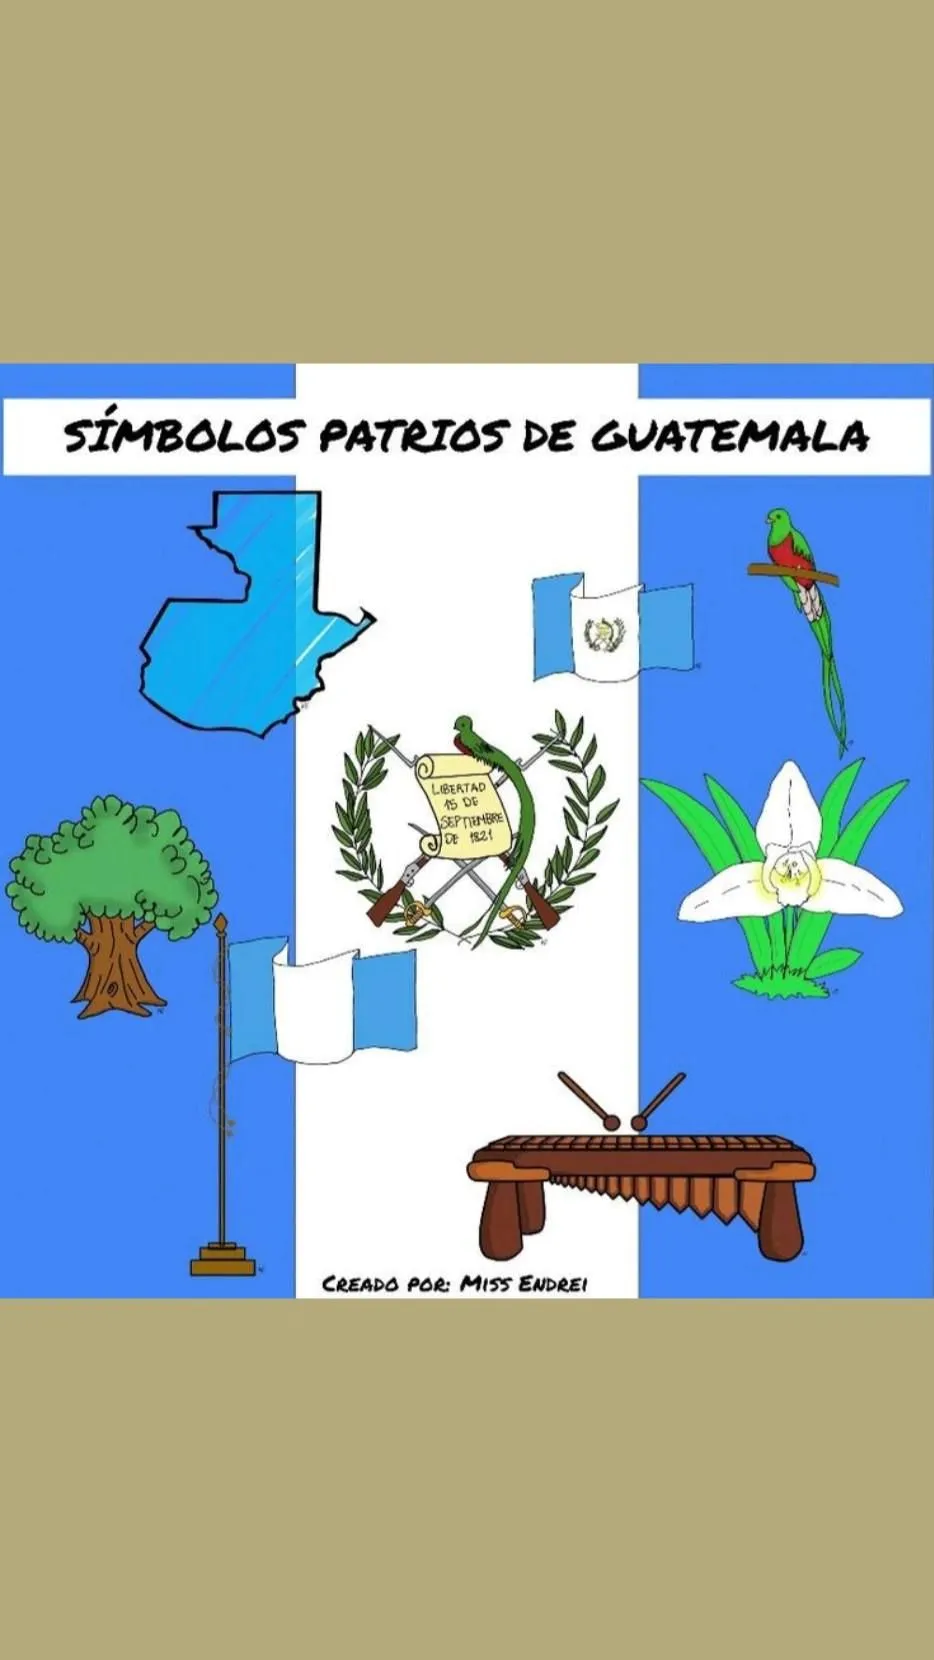 Las 10 mejores ideas e inspiración sobre simbolos patrios de nicaragua